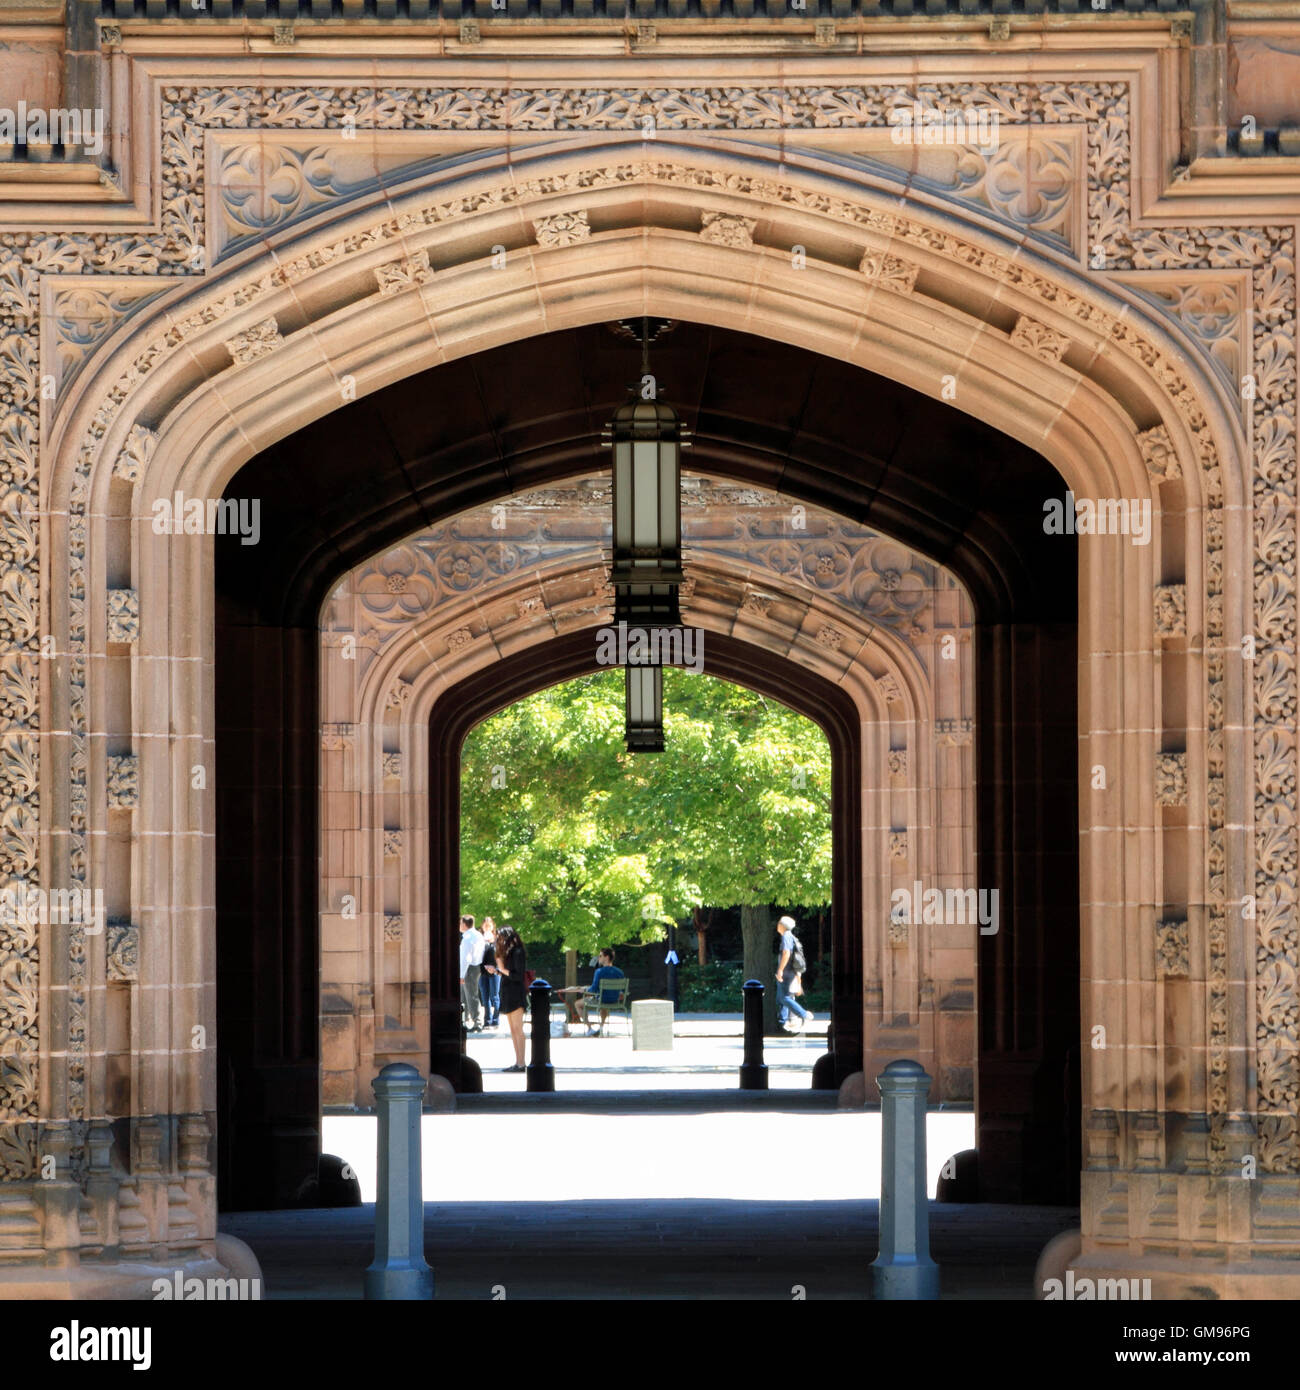 Son entrée dans la cour d'Orient Pyne Hall, Université de Princeton, Princeton, New Jersey, USA Banque D'Images